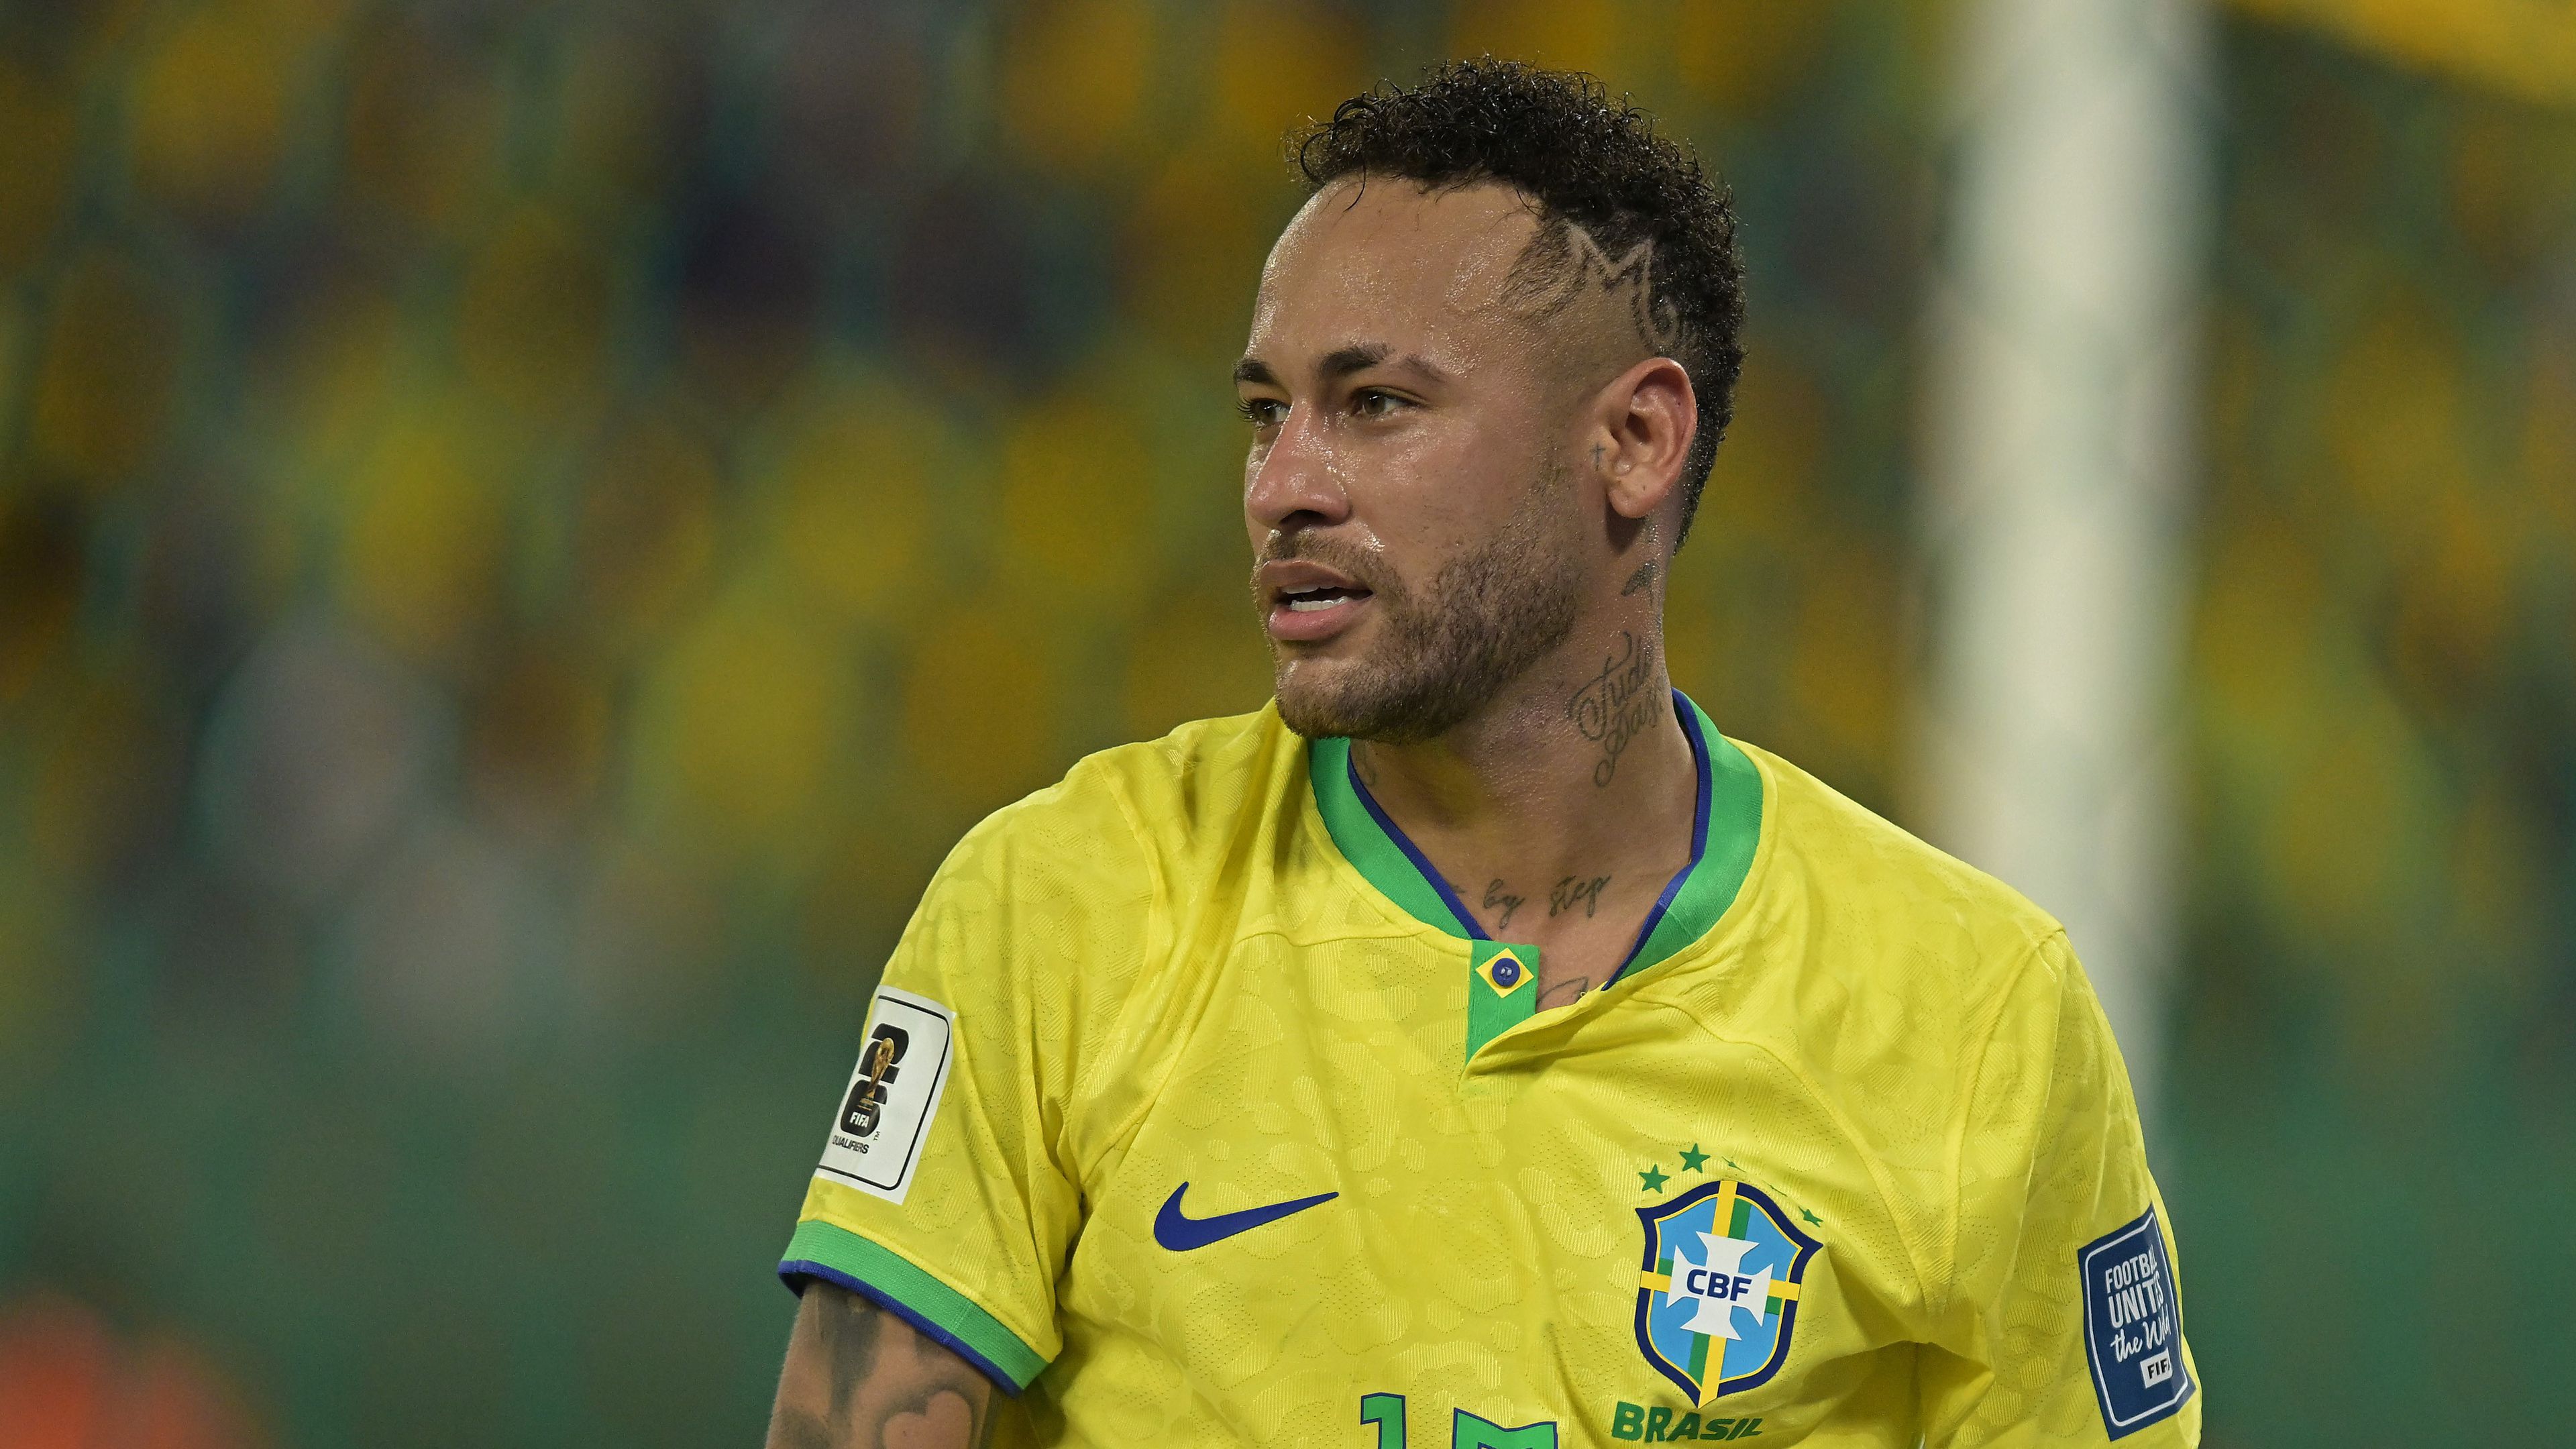 Kirakhatják klubcsapata keretéből Neymart – sajtóhír